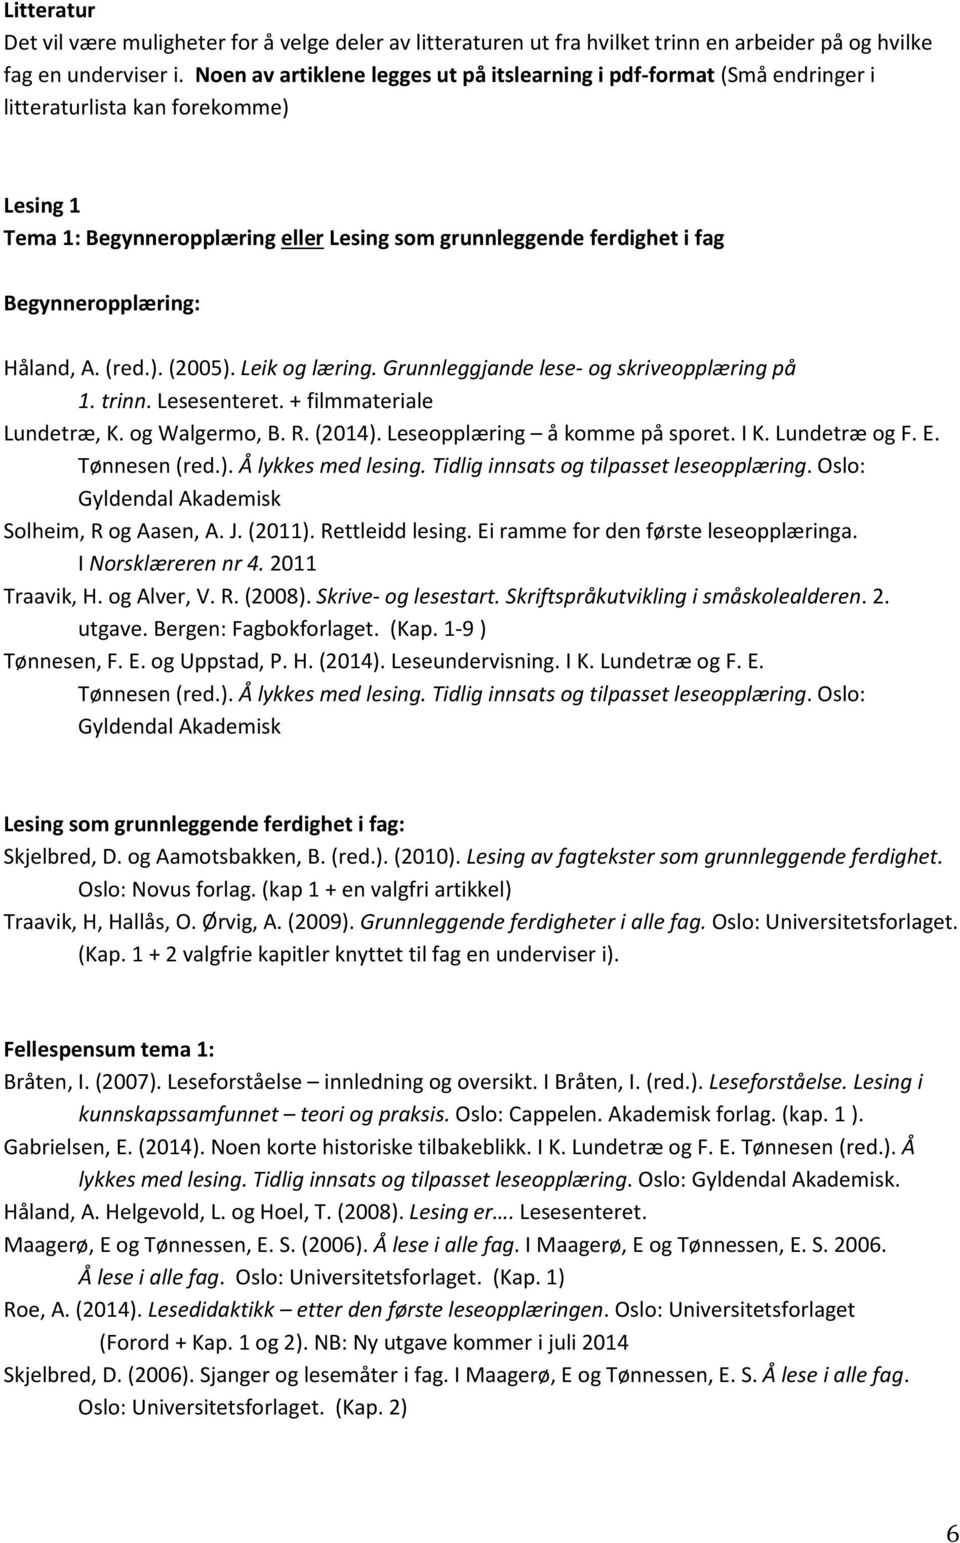 Begynneropplæring: Håland, A. (red.). (2005). Leik og læring. Grunnleggjande lese- og skriveopplæring på 1. trinn. Lesesenteret. + filmmateriale Lundetræ, K. og Walgermo, B. R. (2014).